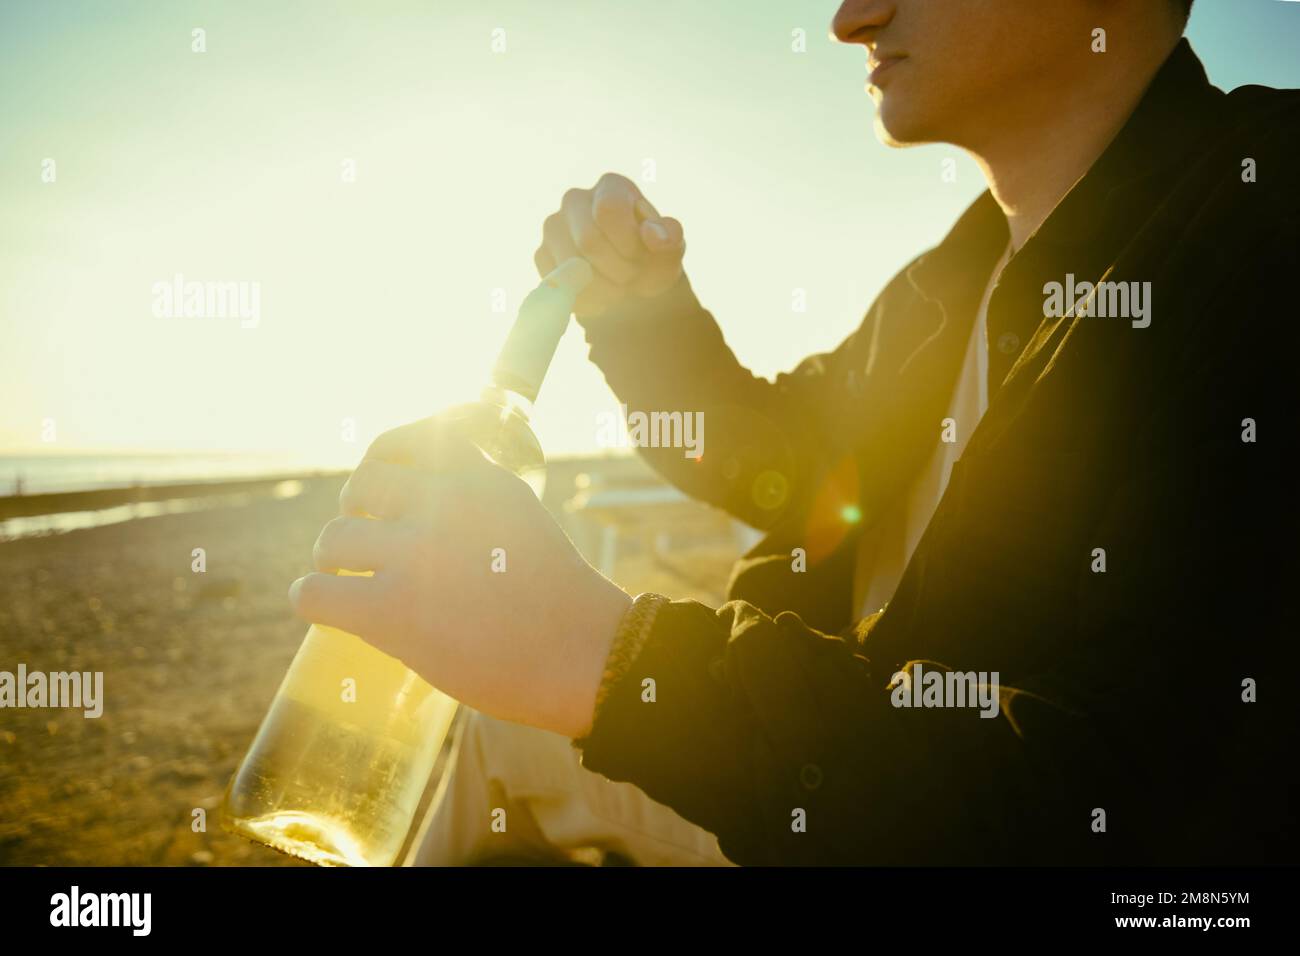 Ein Mann am Ufer des Meeres oder Ozeans öffnet eine Flasche Weißwein. Ein Date am Strand, Alkohol auf der Straße vor dem Hintergrund des Sonnenuntergangs Stockfoto